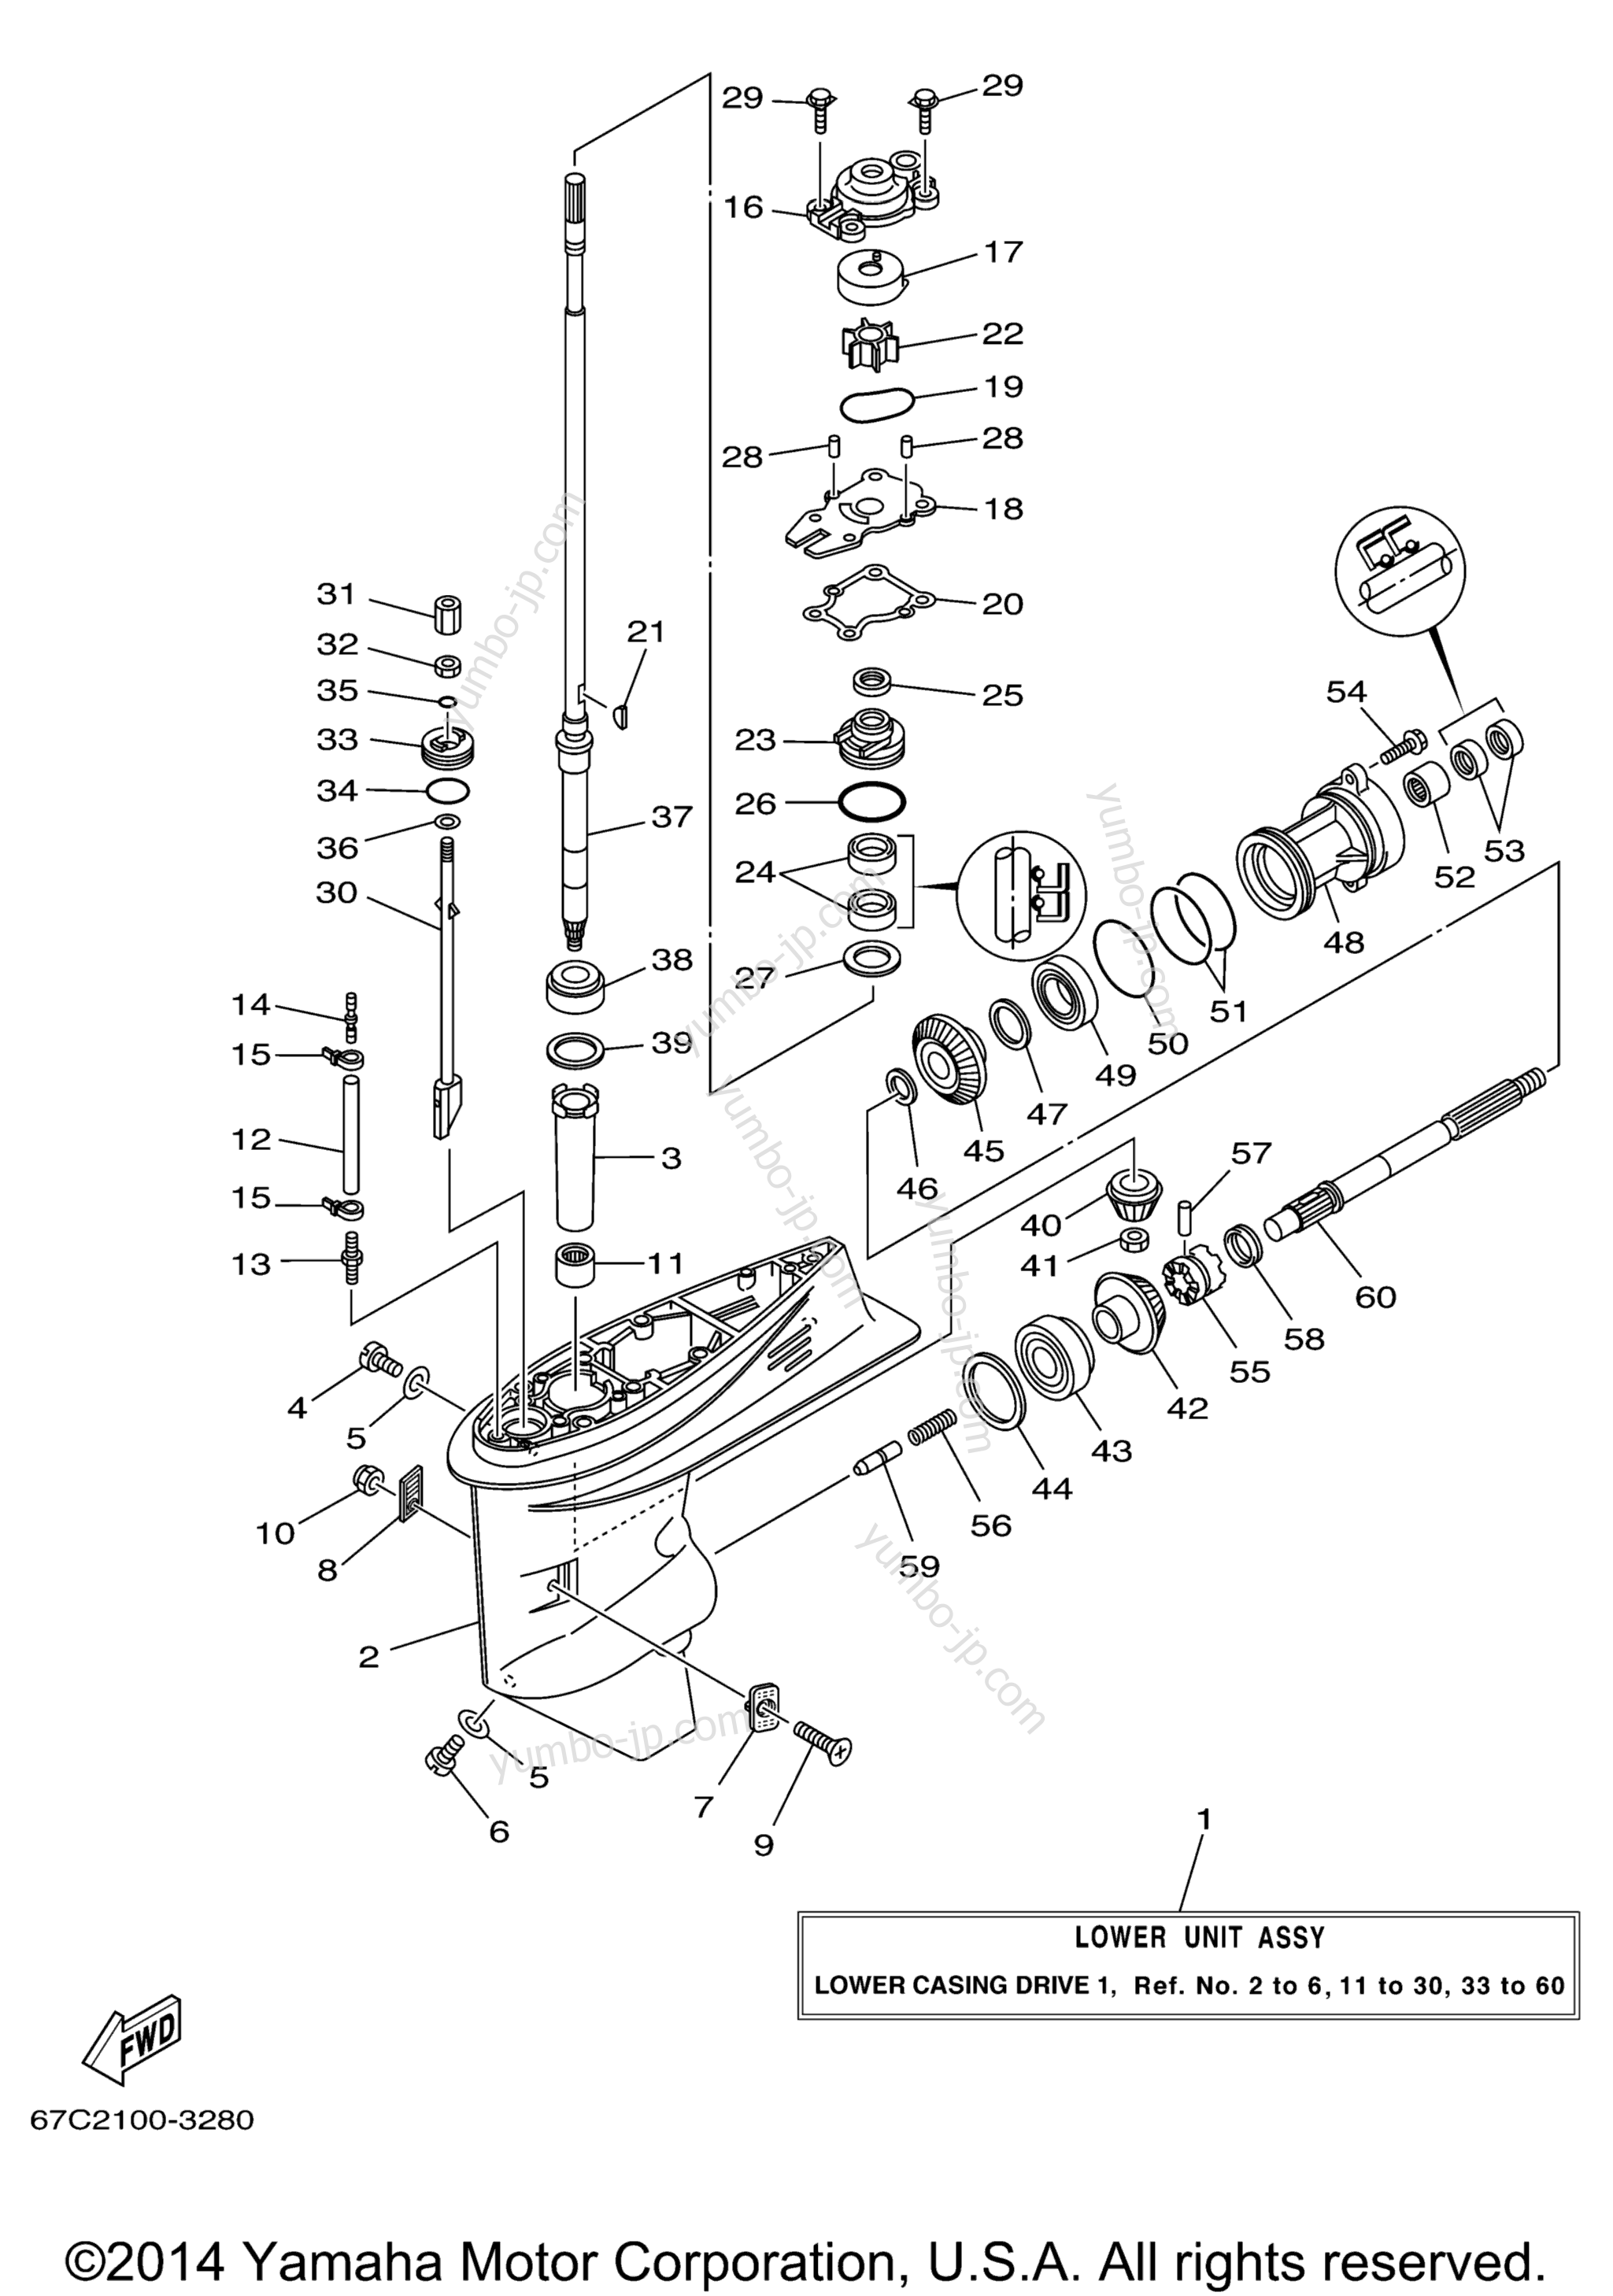 Lower Casing Drive 1 для лодочных моторов YAMAHA F40TLRD_MSHD_MLHD_MJHD_ELRD (F40MSHD) 2005 г.